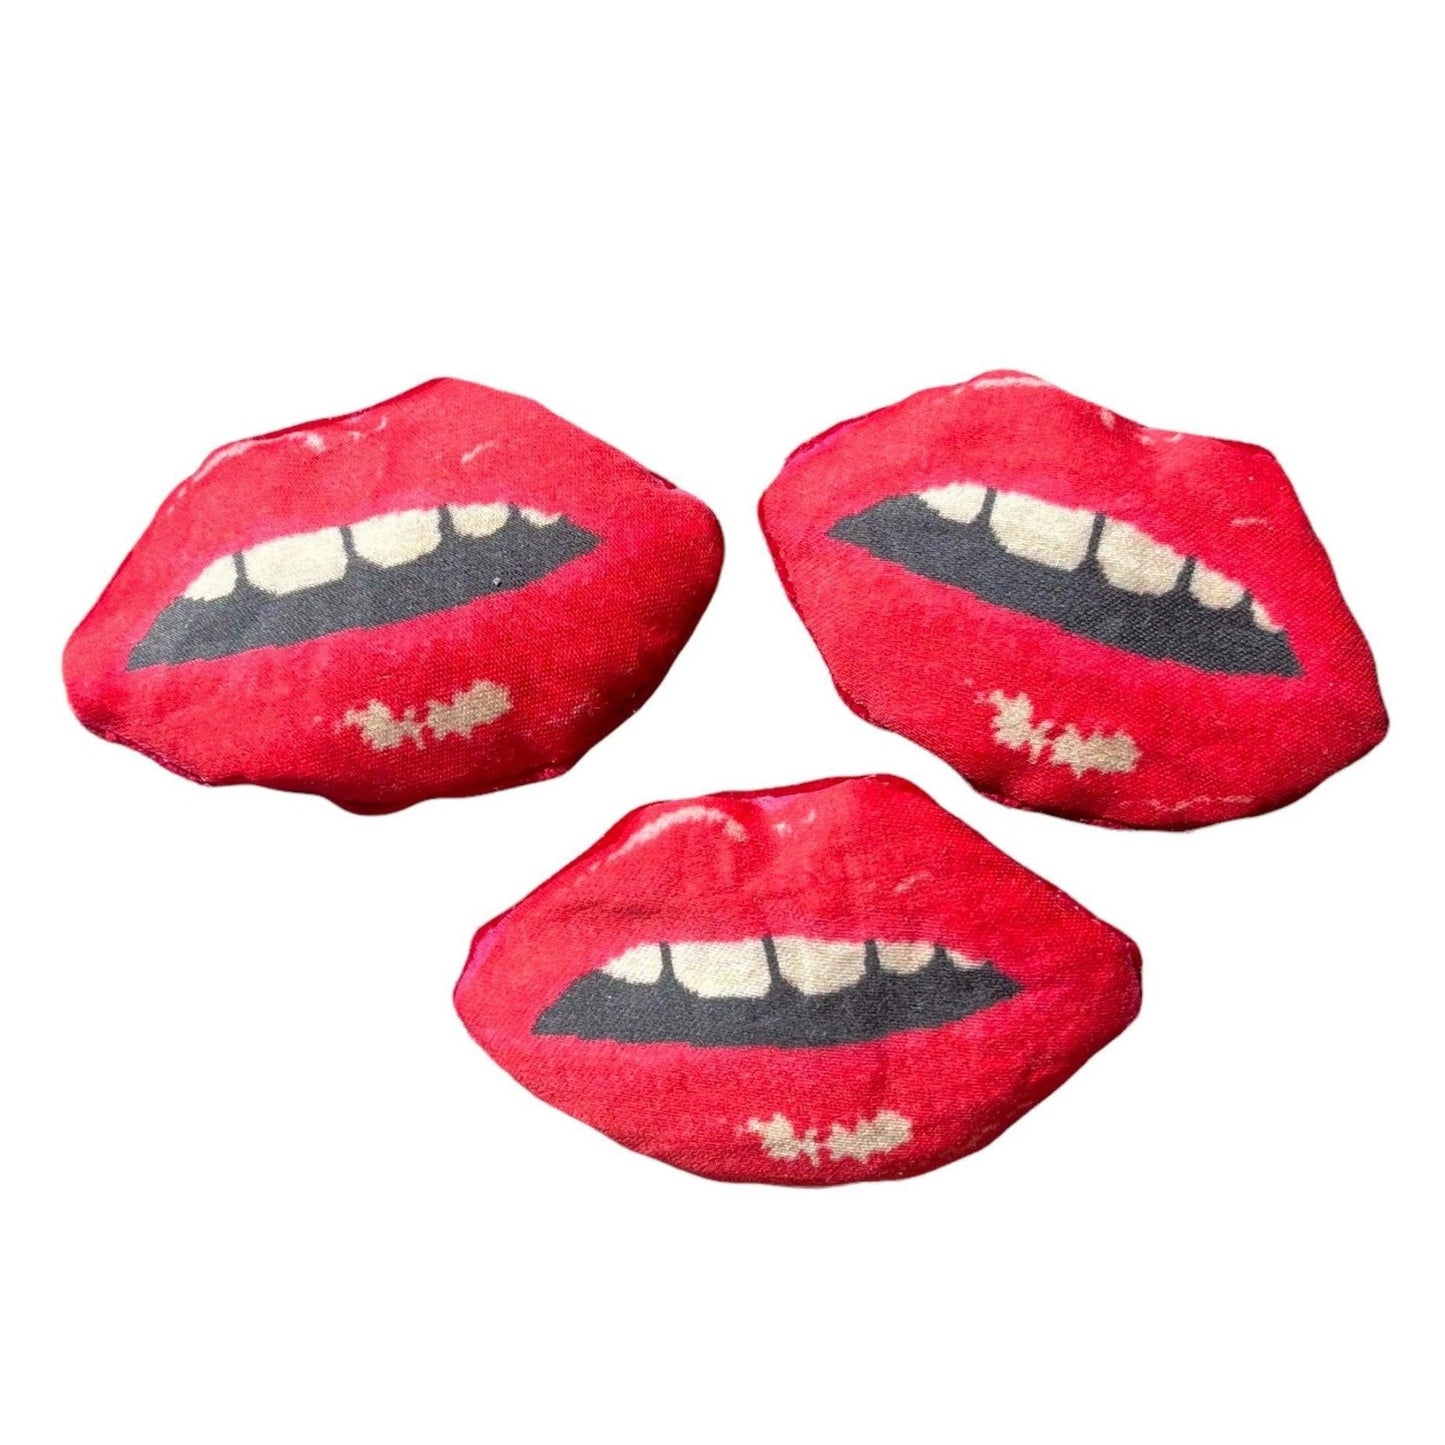  red lips-shaped lavender sachet